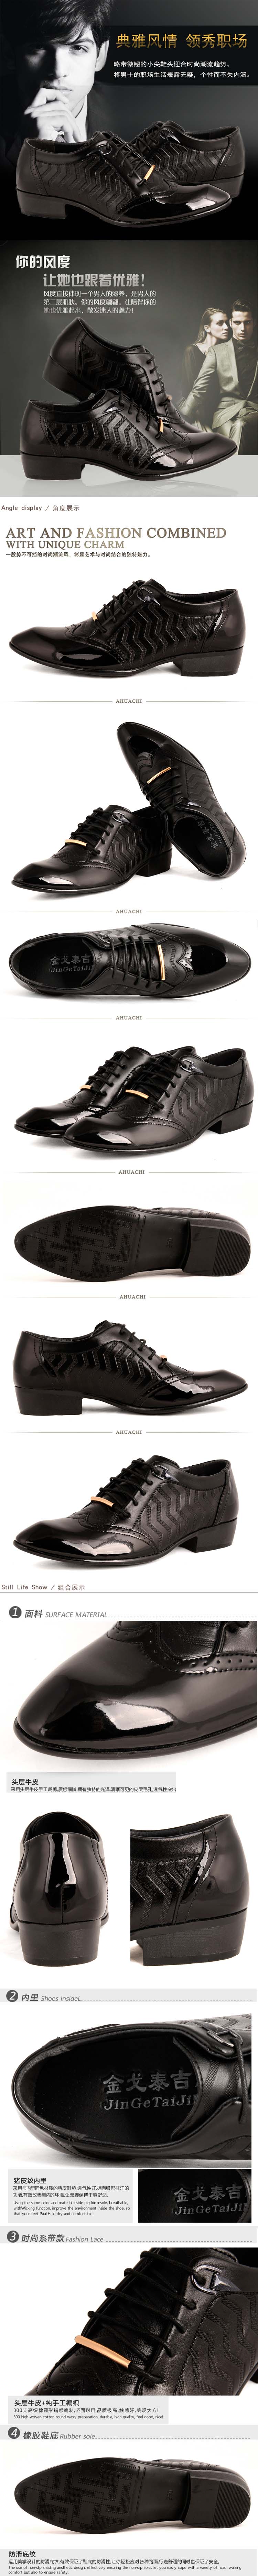 model sepatu kantor pria dengan gaya vintage namun tetap terlihat elegan sangat cocok untuk dipakai kekantor